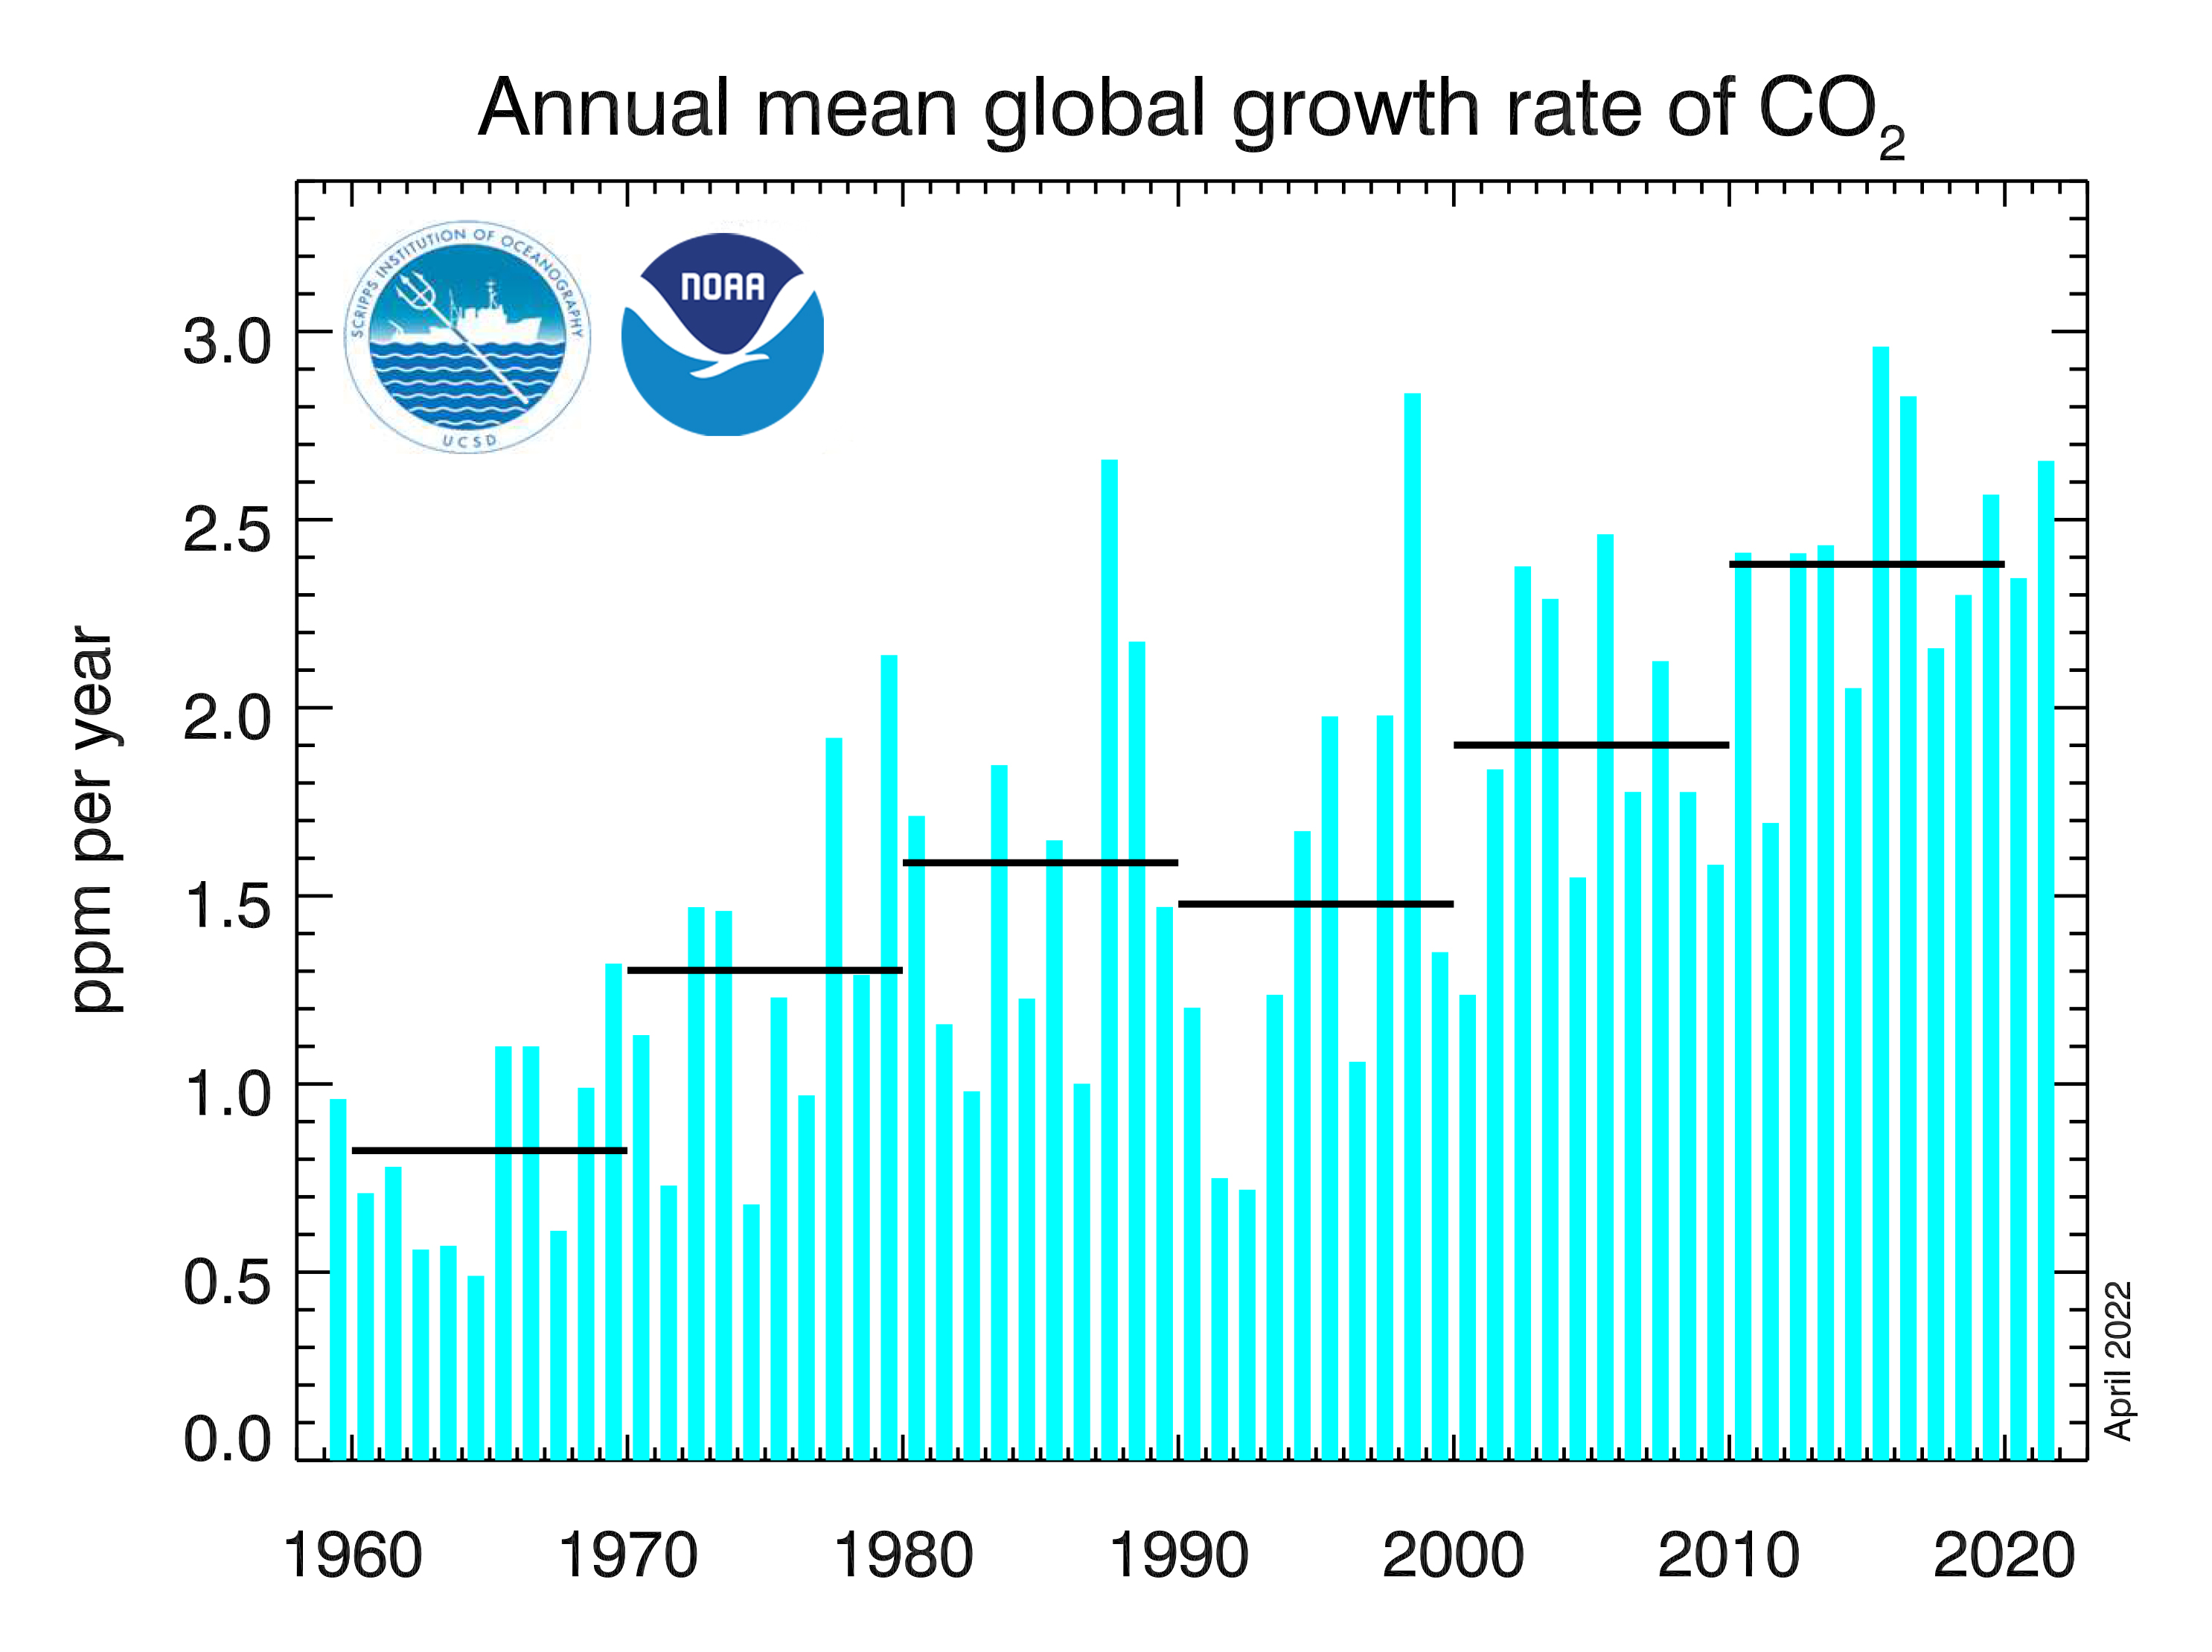 Dados de CO2: Este gráfico mostra as taxas médias anuais de crescimento de dióxido de carbono, com base em dados médios globais da superfície marinha, desde o início do monitoramento sistemático em 1959. As linhas horizontais indicam as médias decenais da taxa de crescimento.